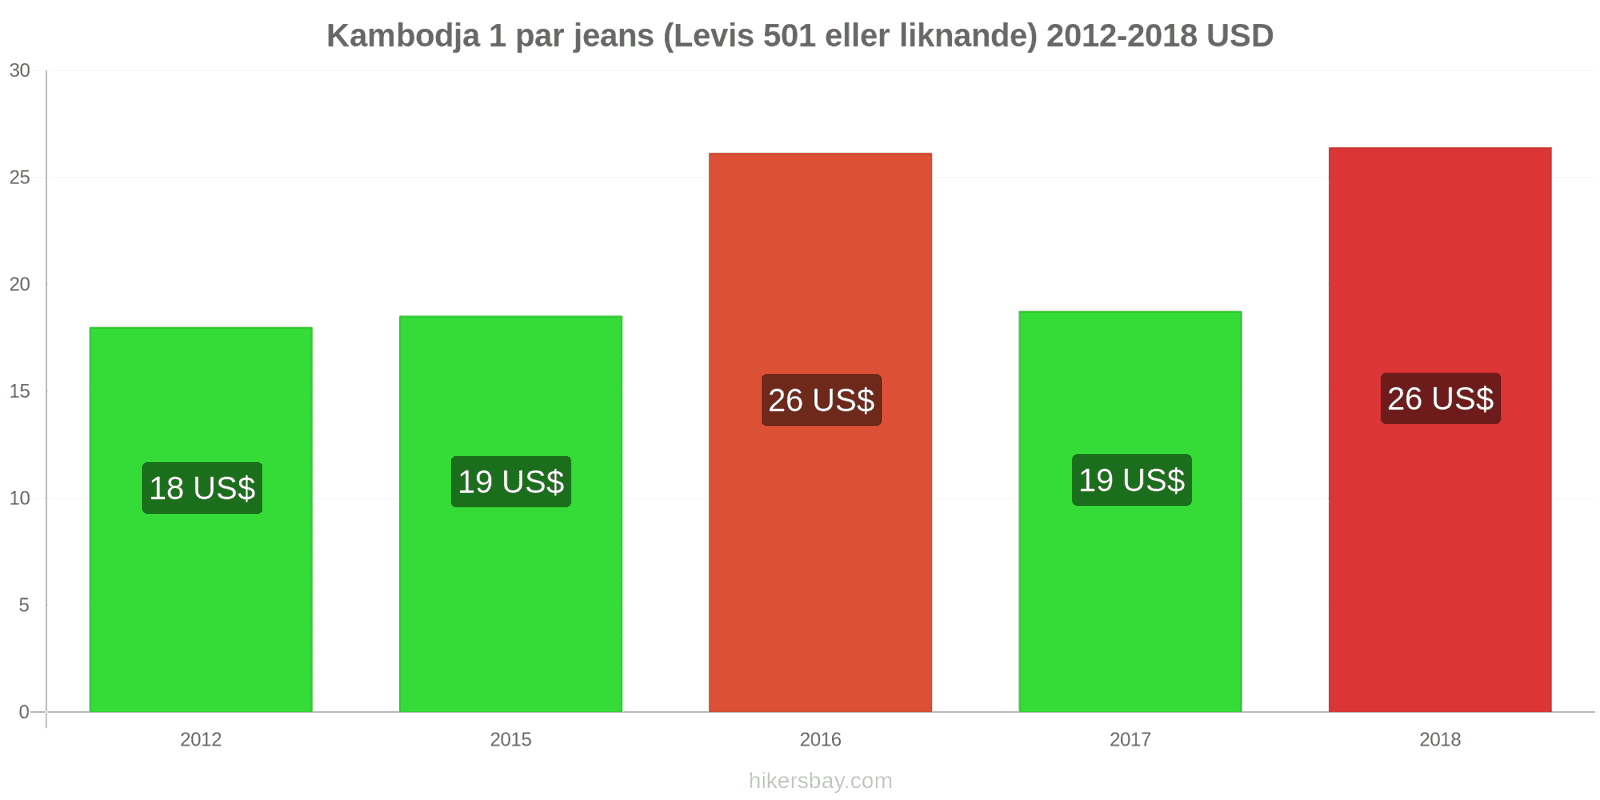 Kambodja prisändringar 1 par jeans (Levis 501 eller liknande) hikersbay.com